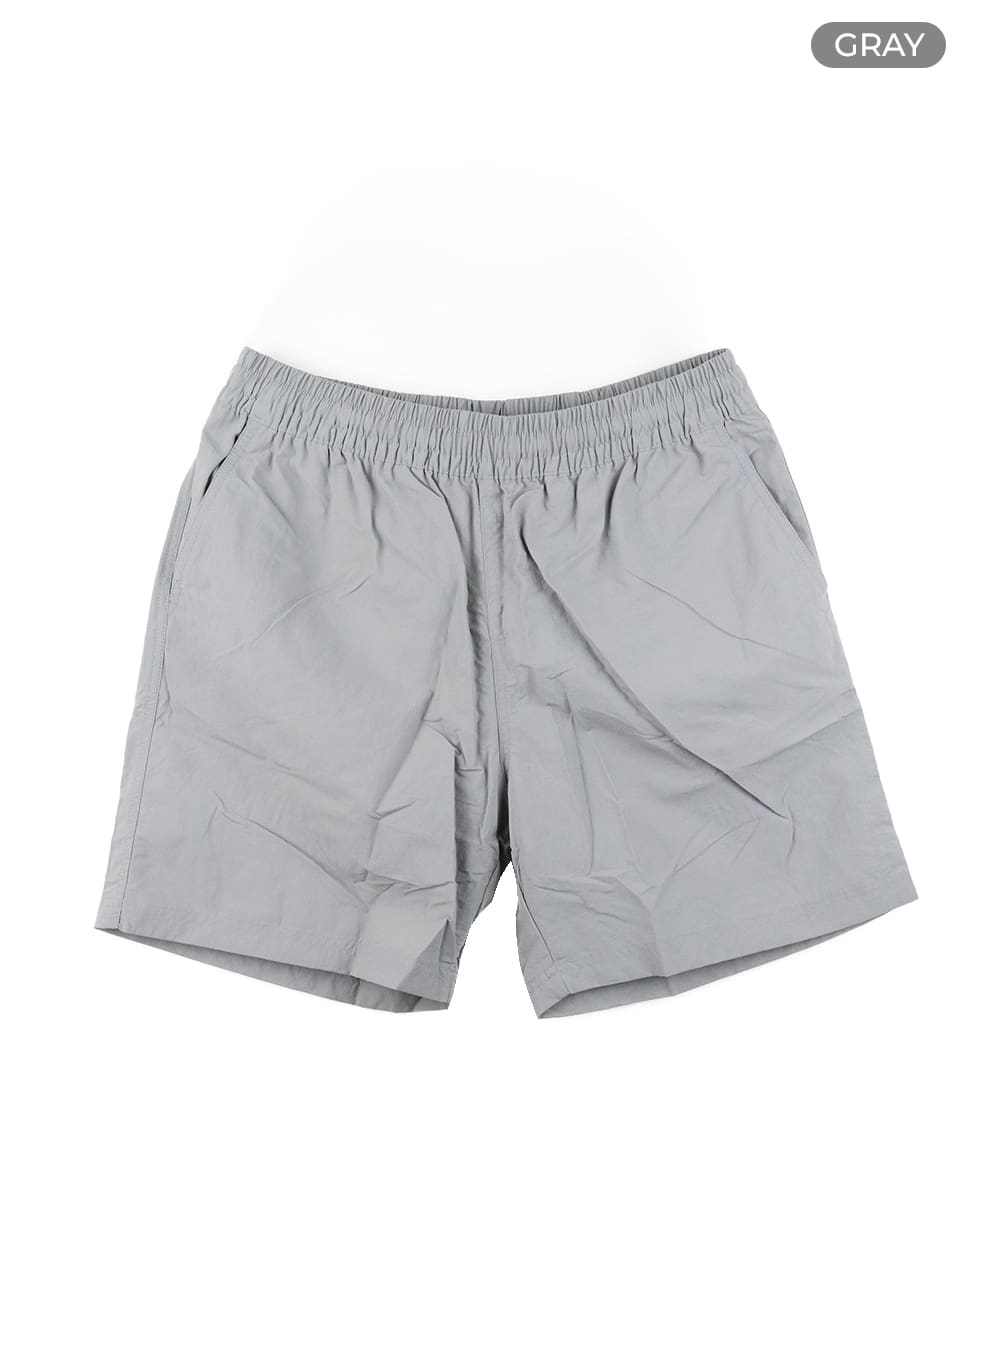 mens-casual-nylon-shorts-ia402 / Gray